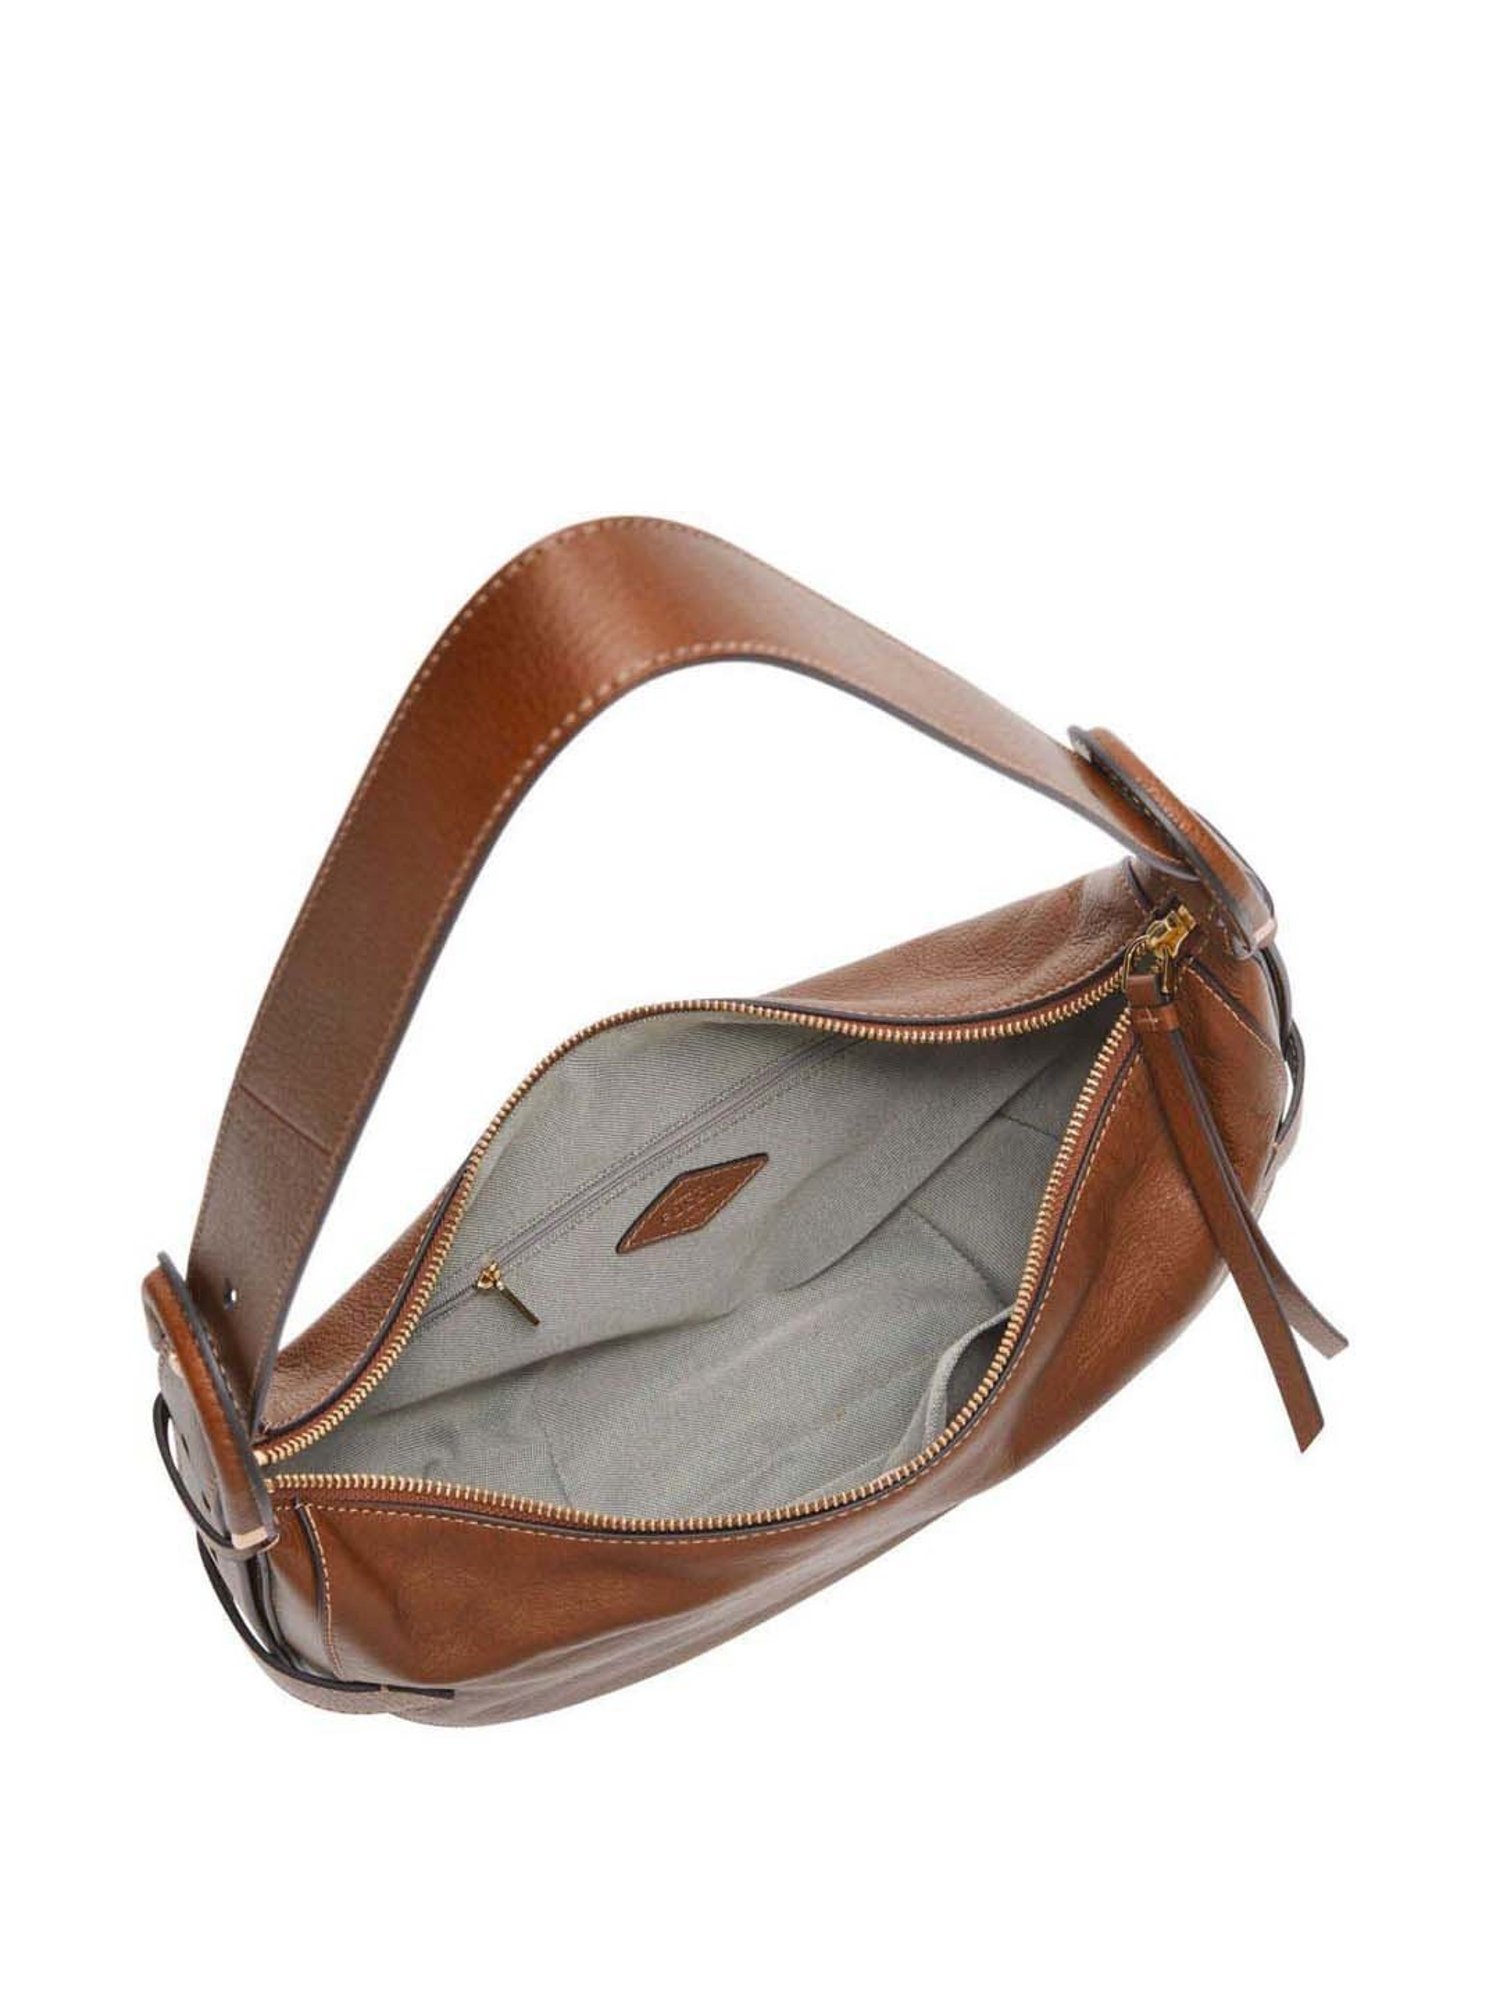 Vintage Fossil Brown Leather Floral Embossed Hobo Bag | eBay